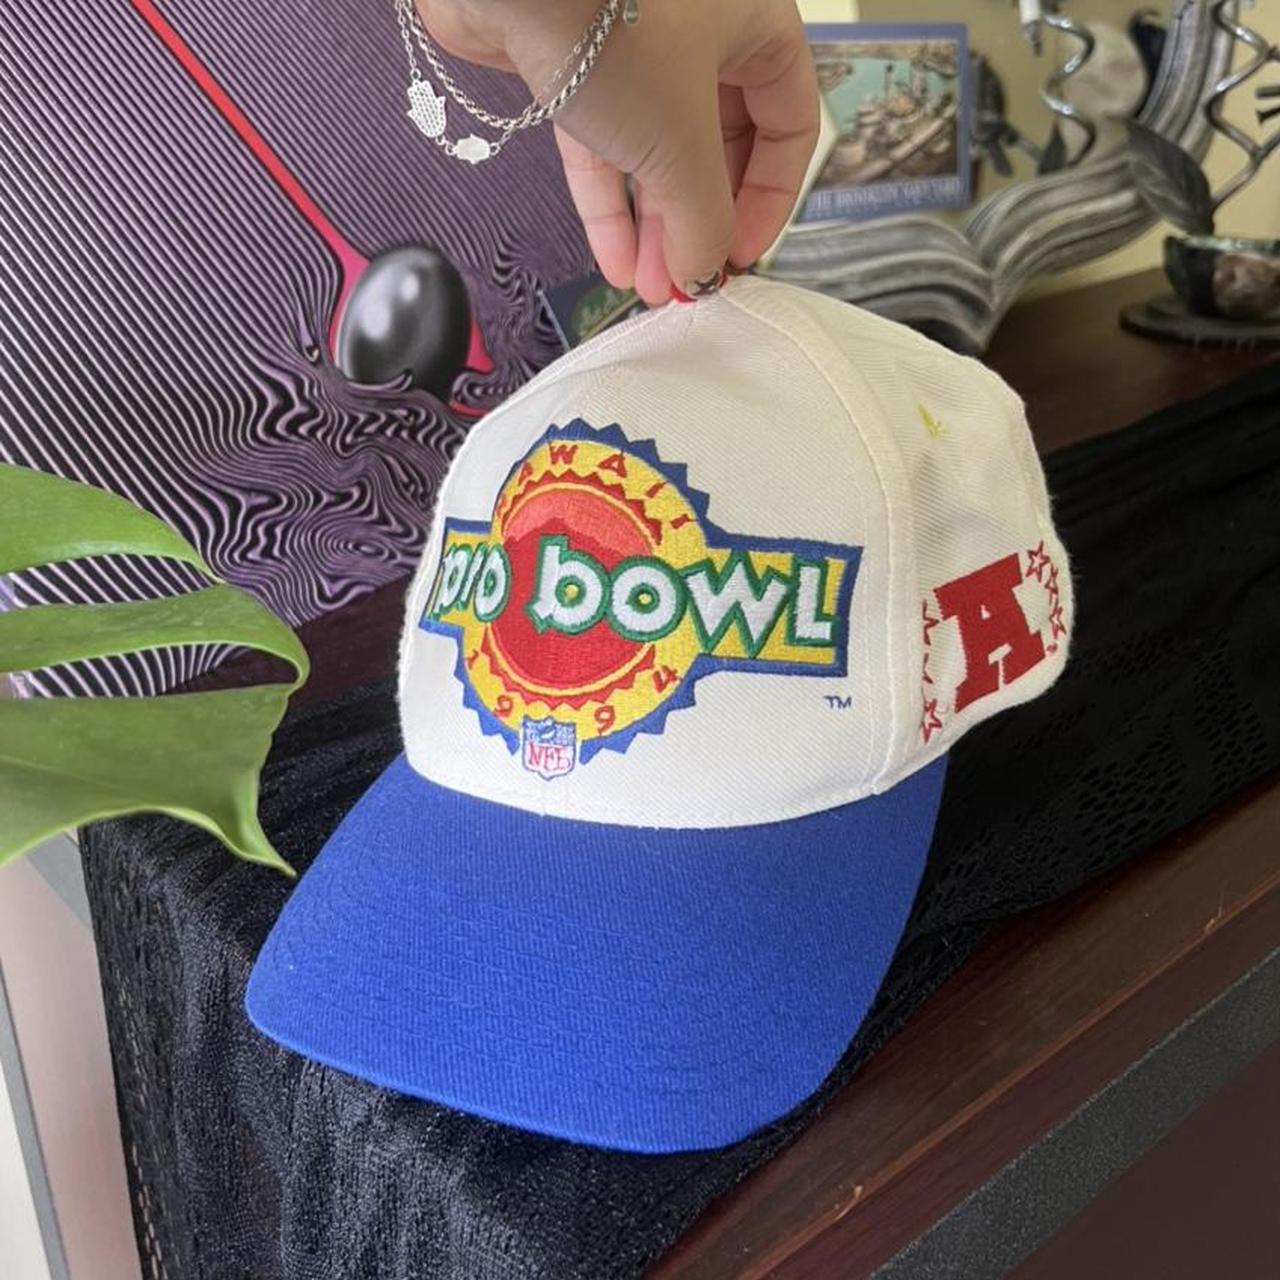 Pro Bowl HAWAII 1994 NFL hat!!!!! 🌴🌺🌊☀️. Repop....